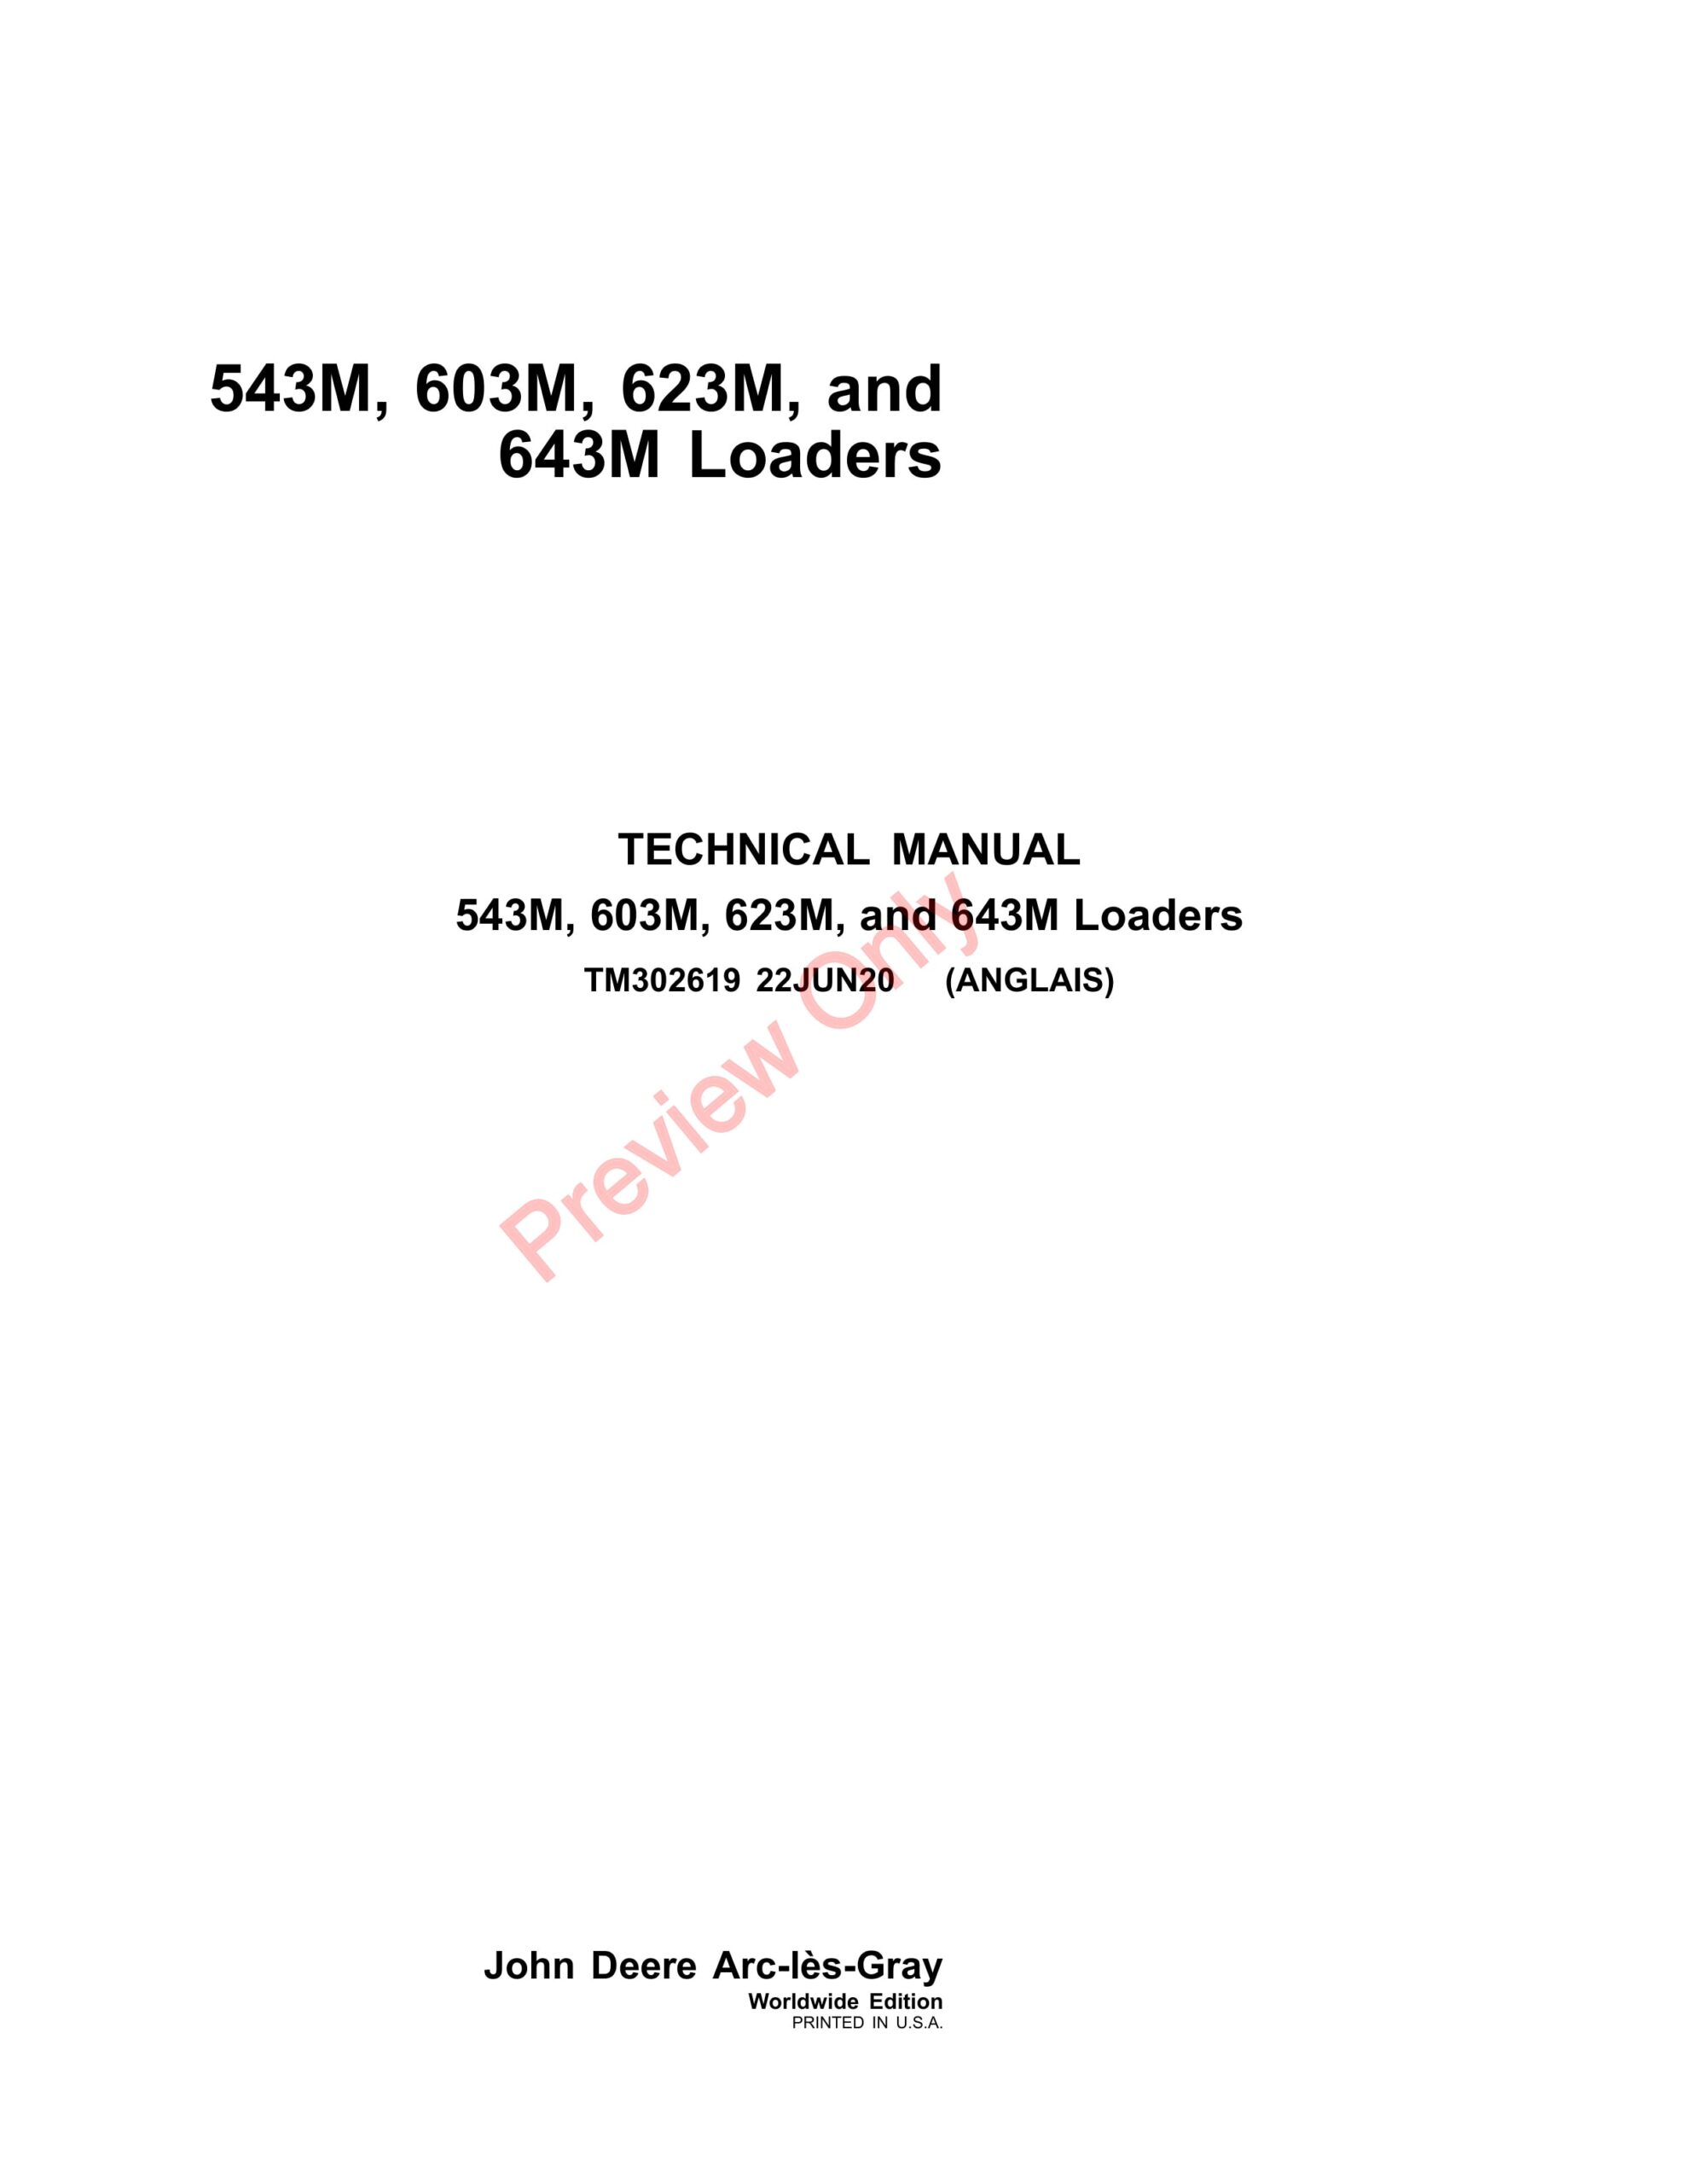 John Deere 543M, 603M, 623M, and 643M Loaders Technical Manual TM302619 22JUN20-1